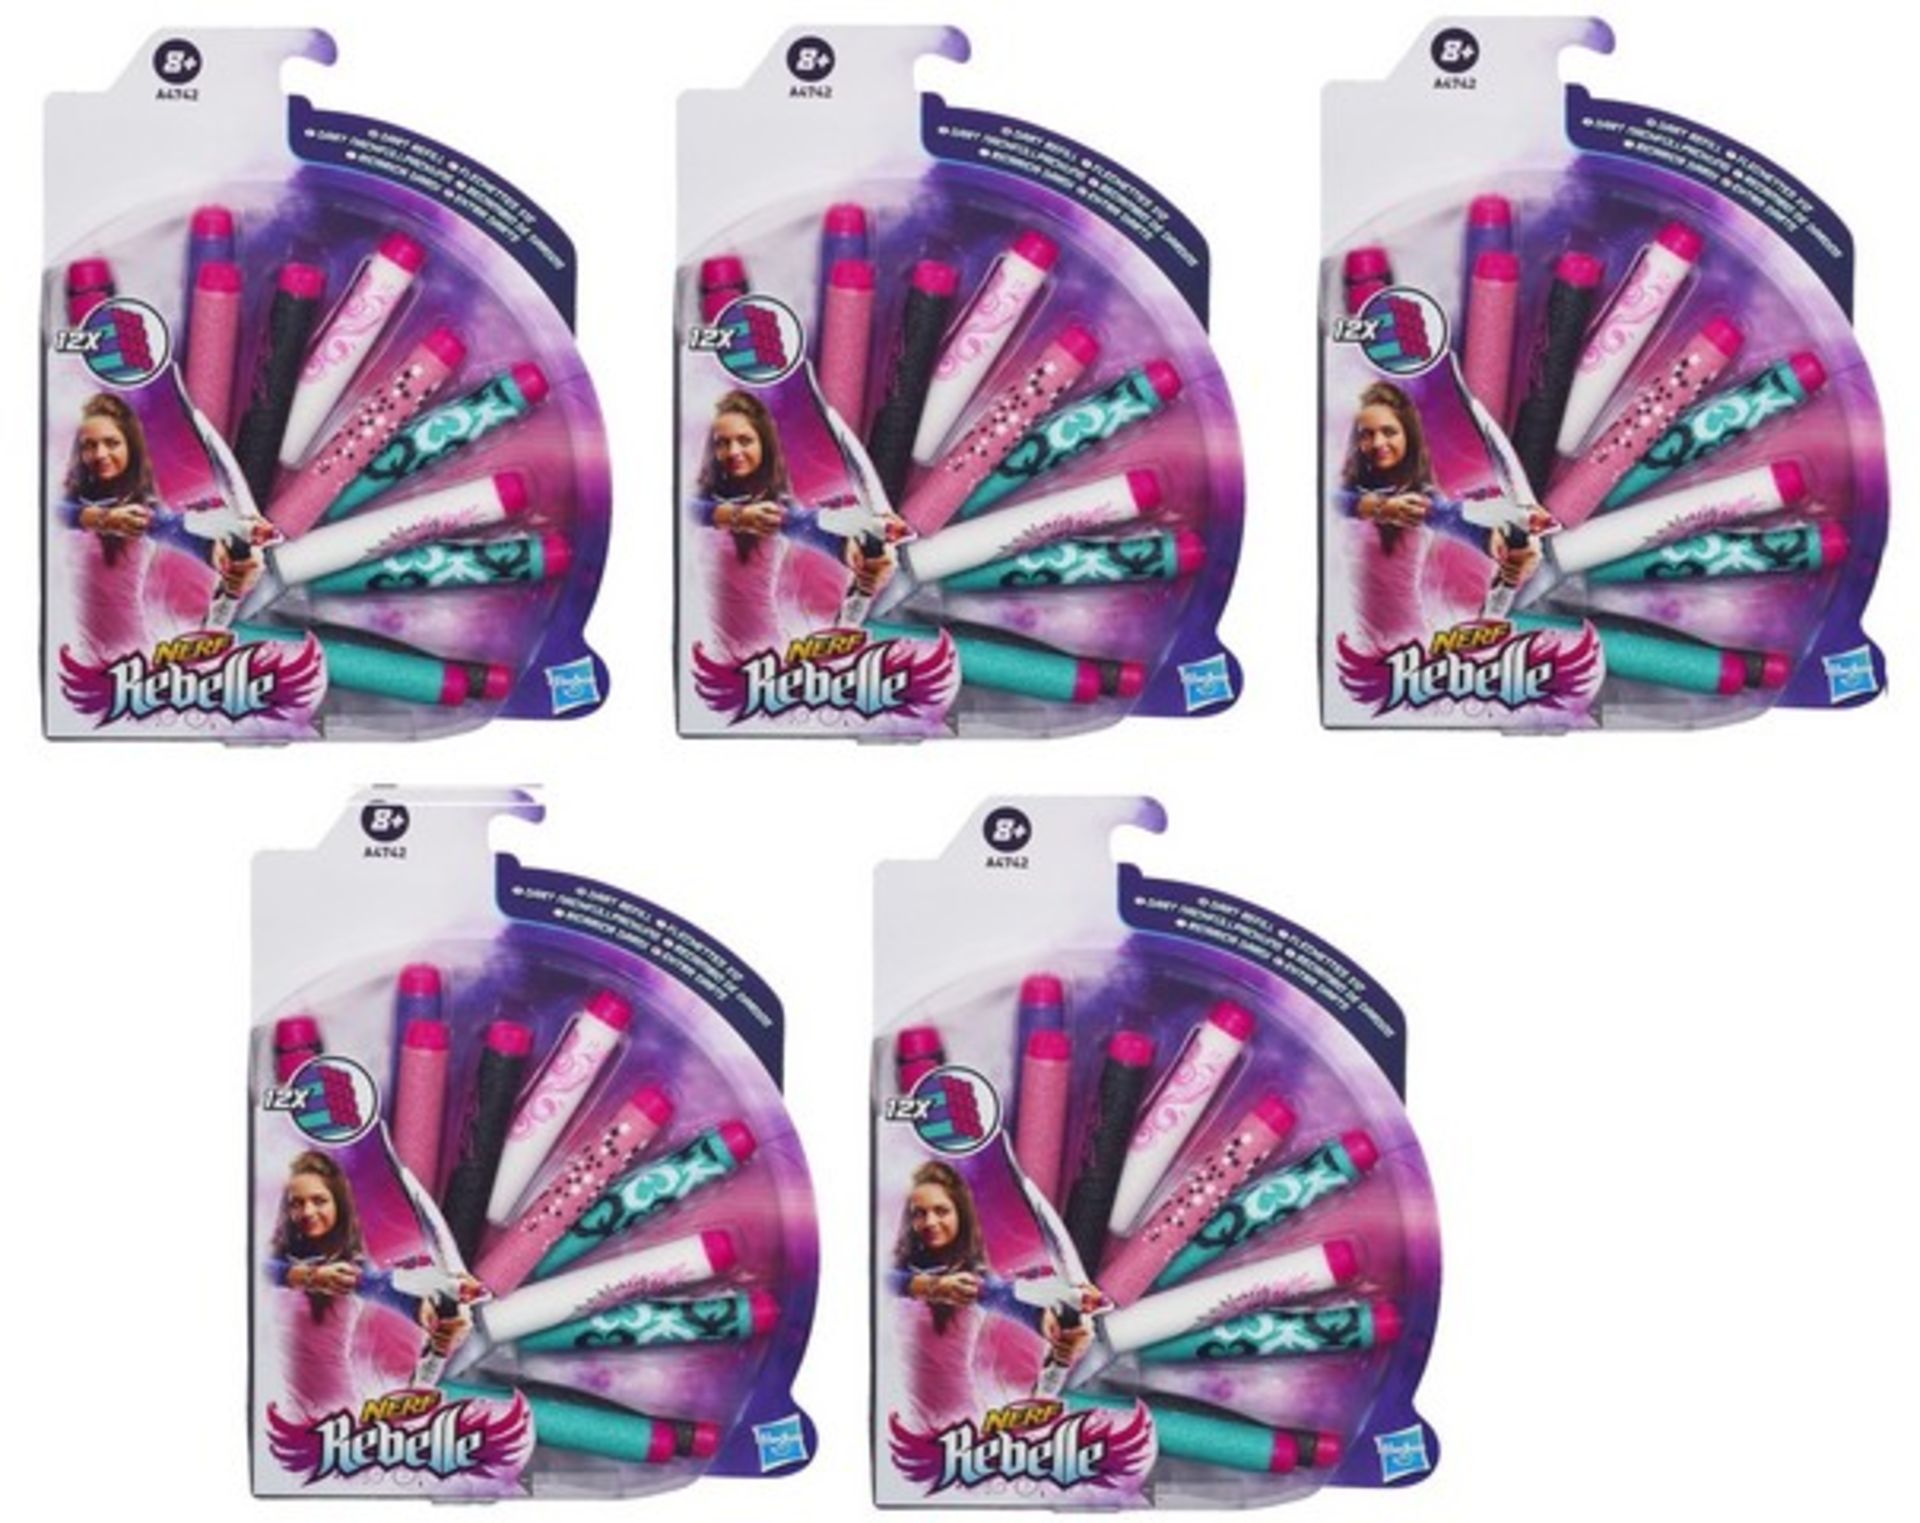 + VAT Brand New 5 Packs Hasbro Nerf Rebelle 12 x Dart Refill - Amazon Price Â£37.85 - Image 2 of 2